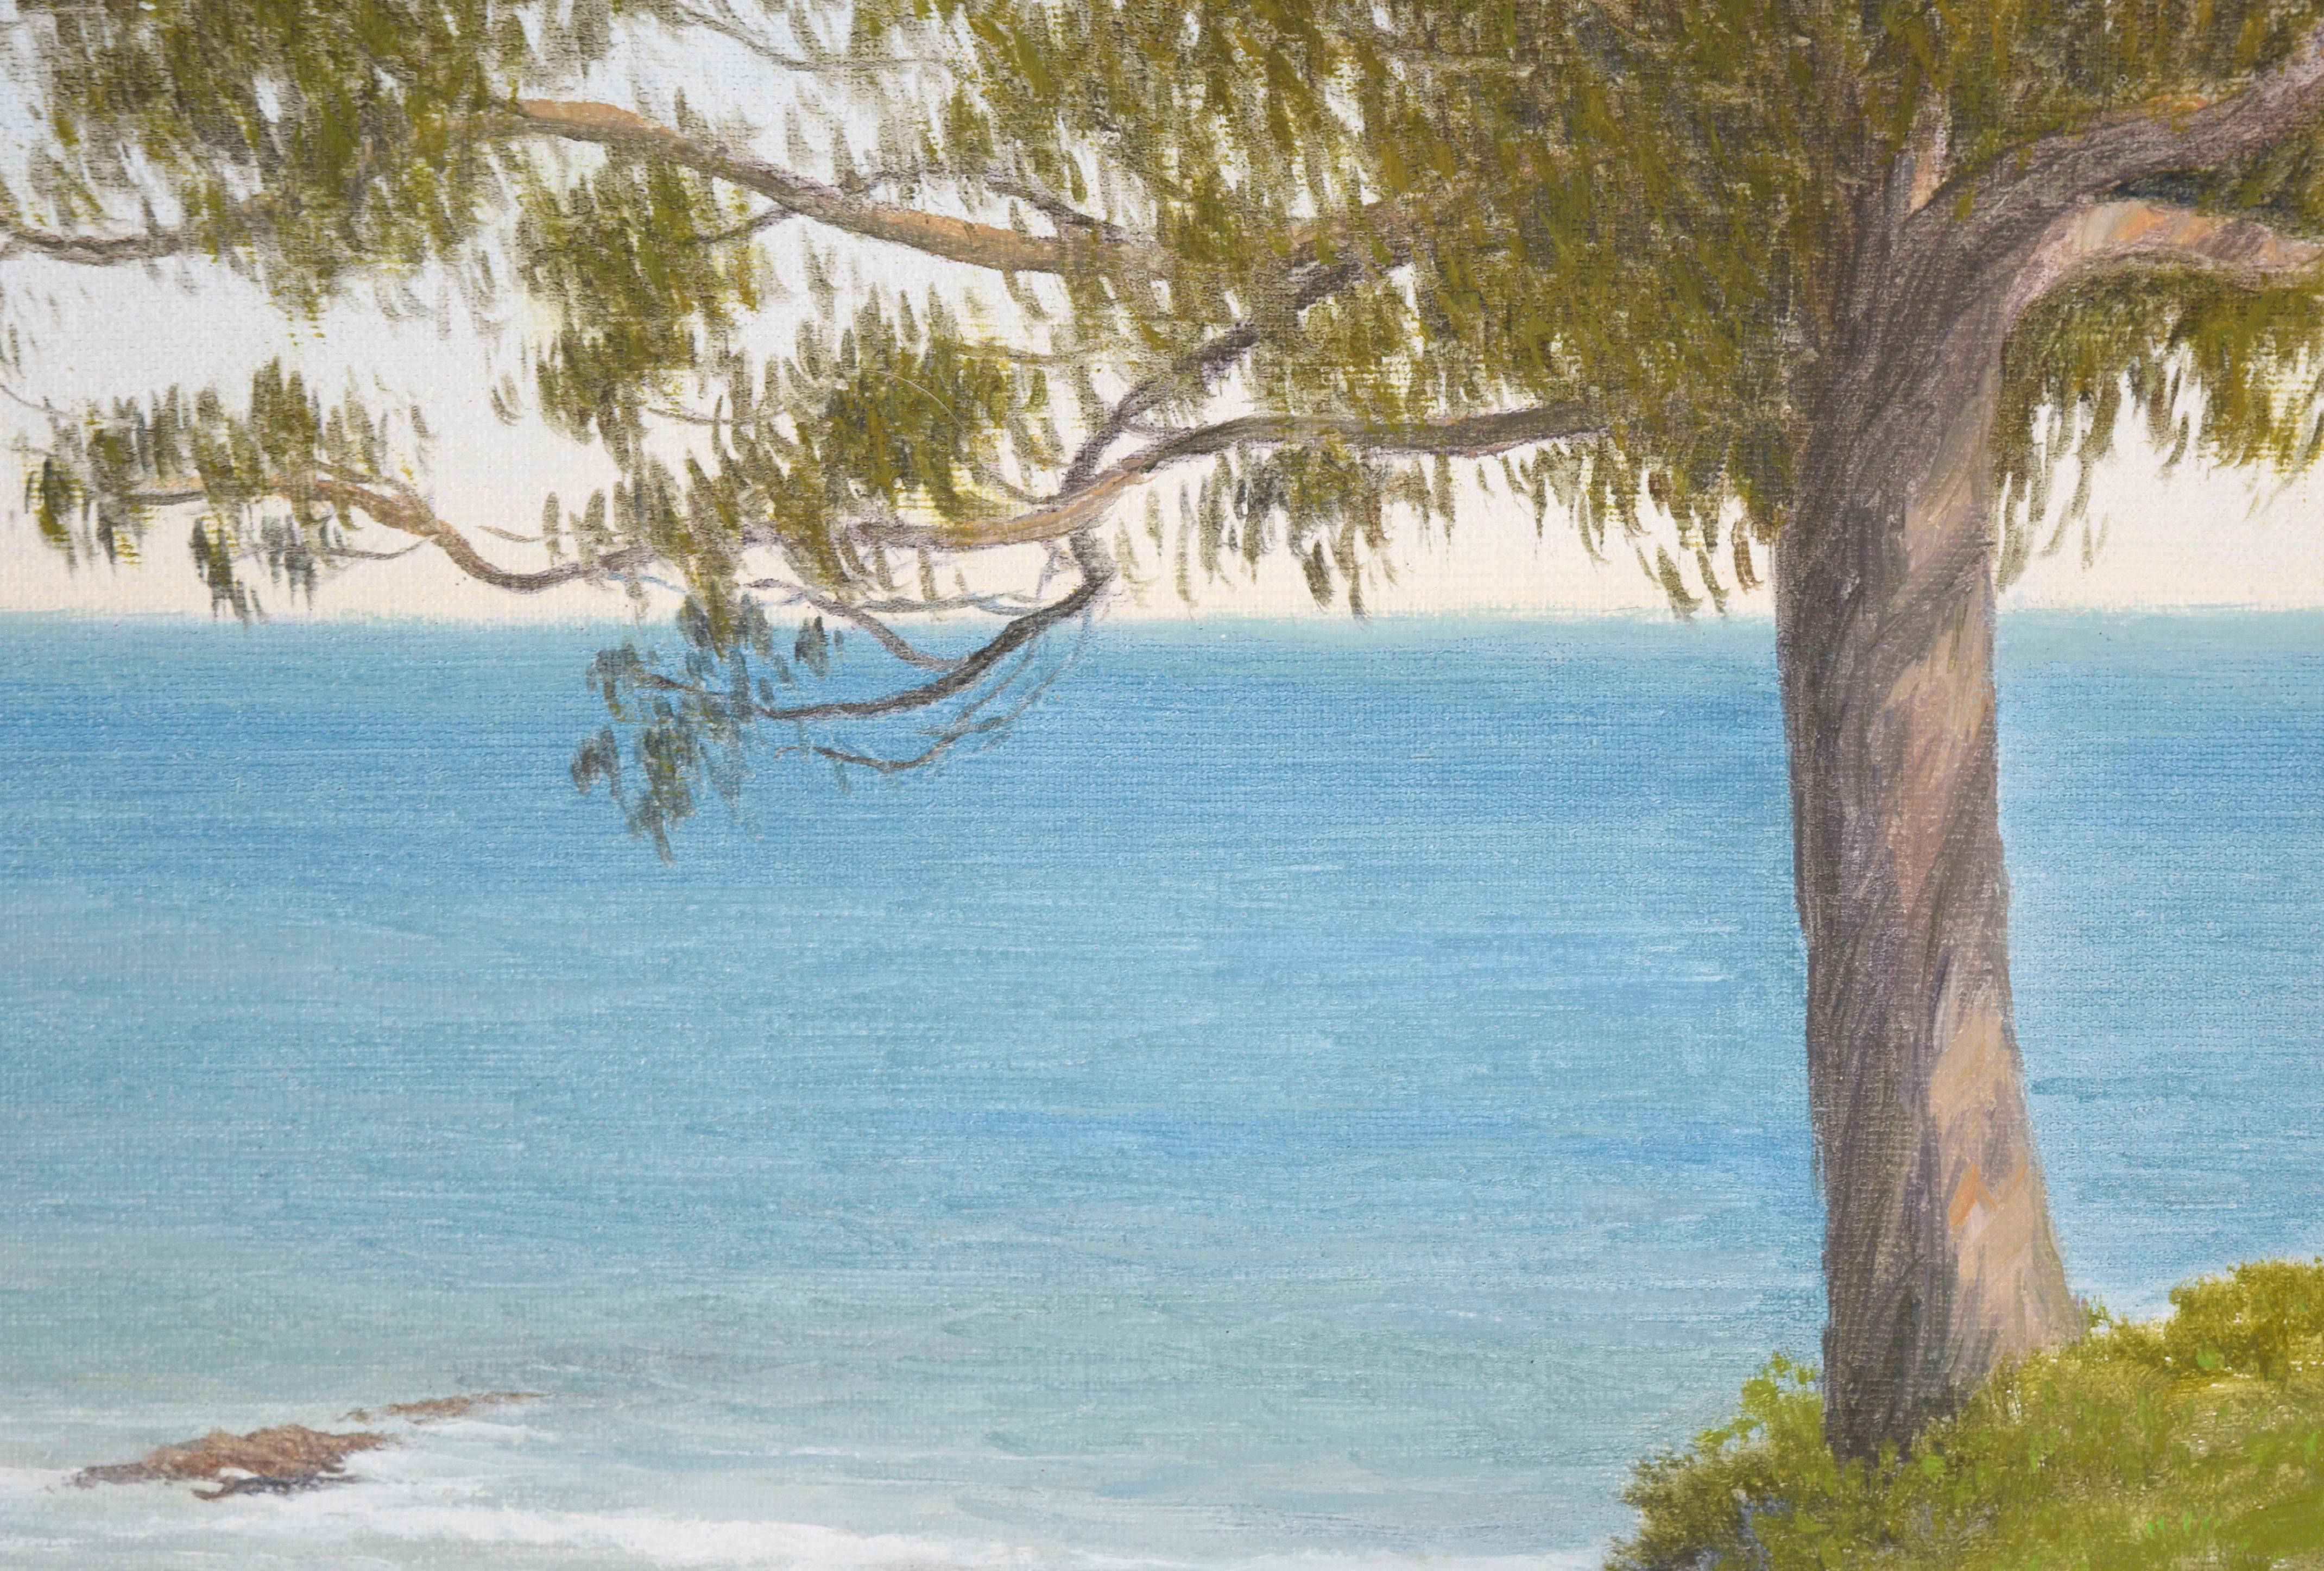 « West Cliff, Santa Cruz », paysage côtier à l'huile sur lin

Peinture à l'huile d'un paysage de plage par Max Flandorfer (américain, né en 1962). Un grand eucalyptus se trouve au bord d'une falaise surplombant l'eau. La falaise est recouverte